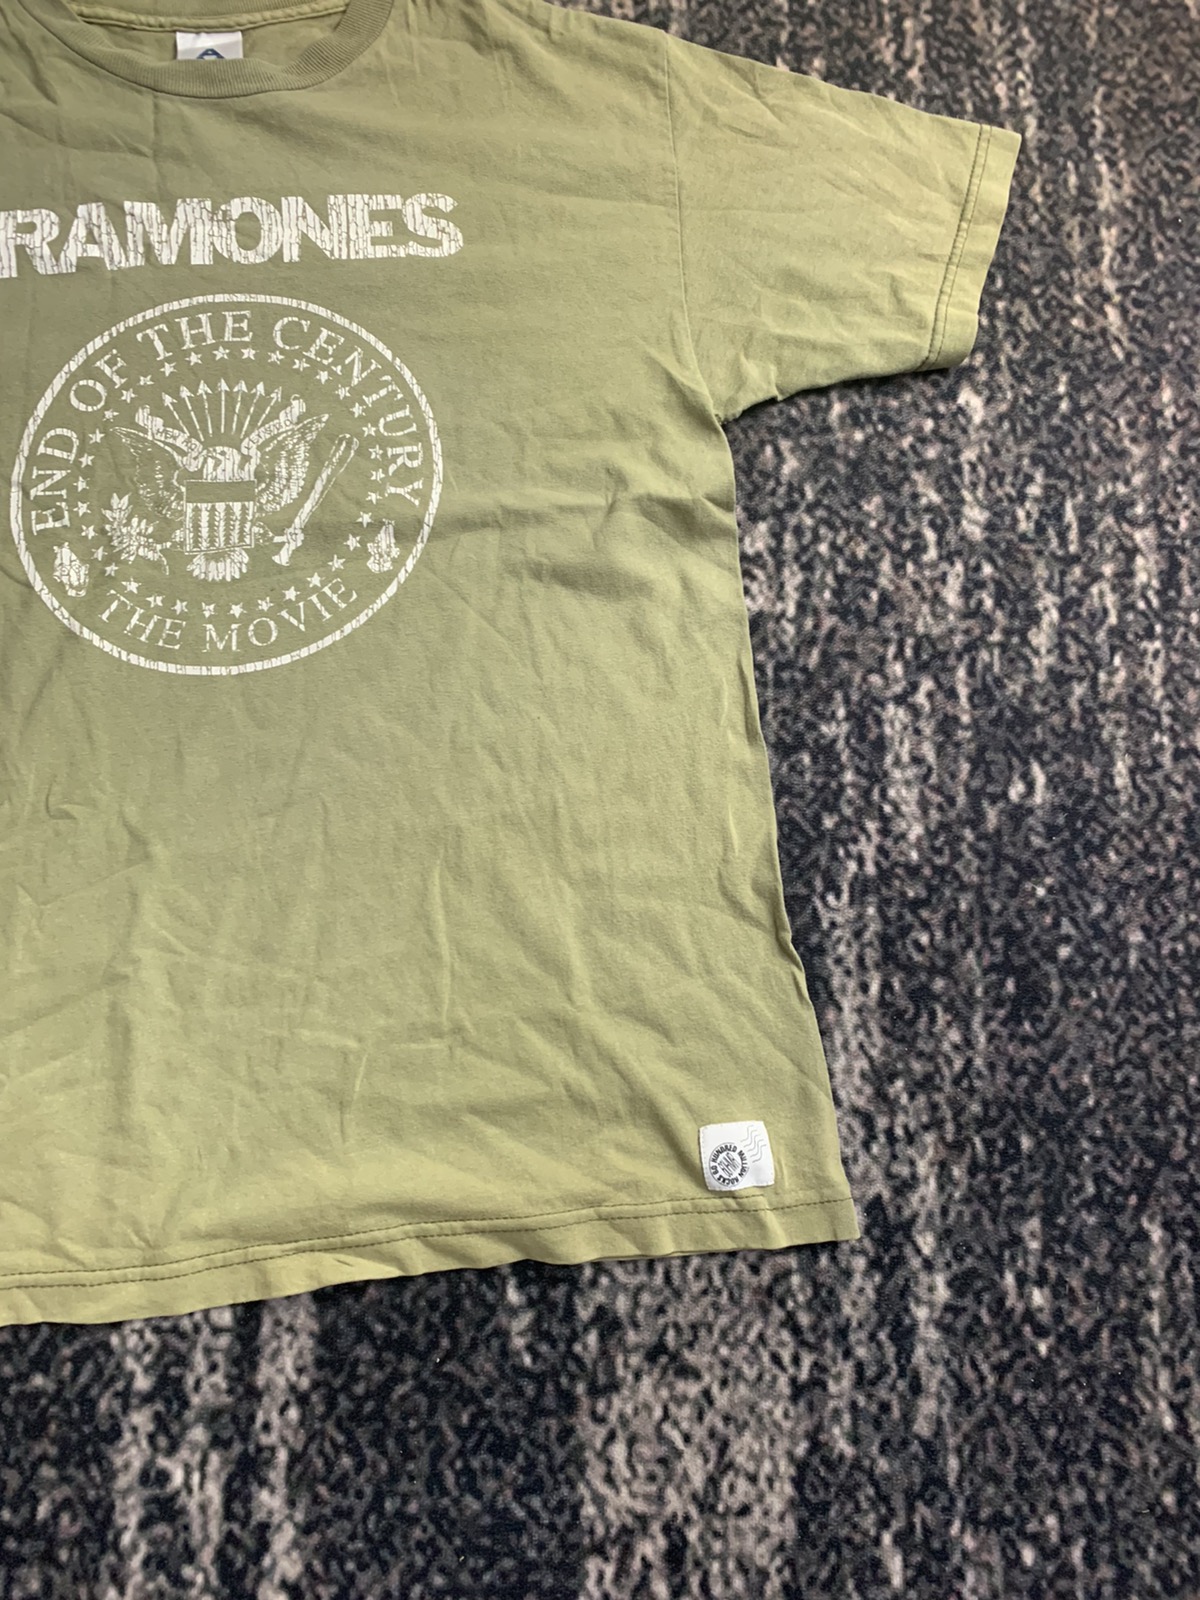 Band Tees - Ramones band tees shirt - 3